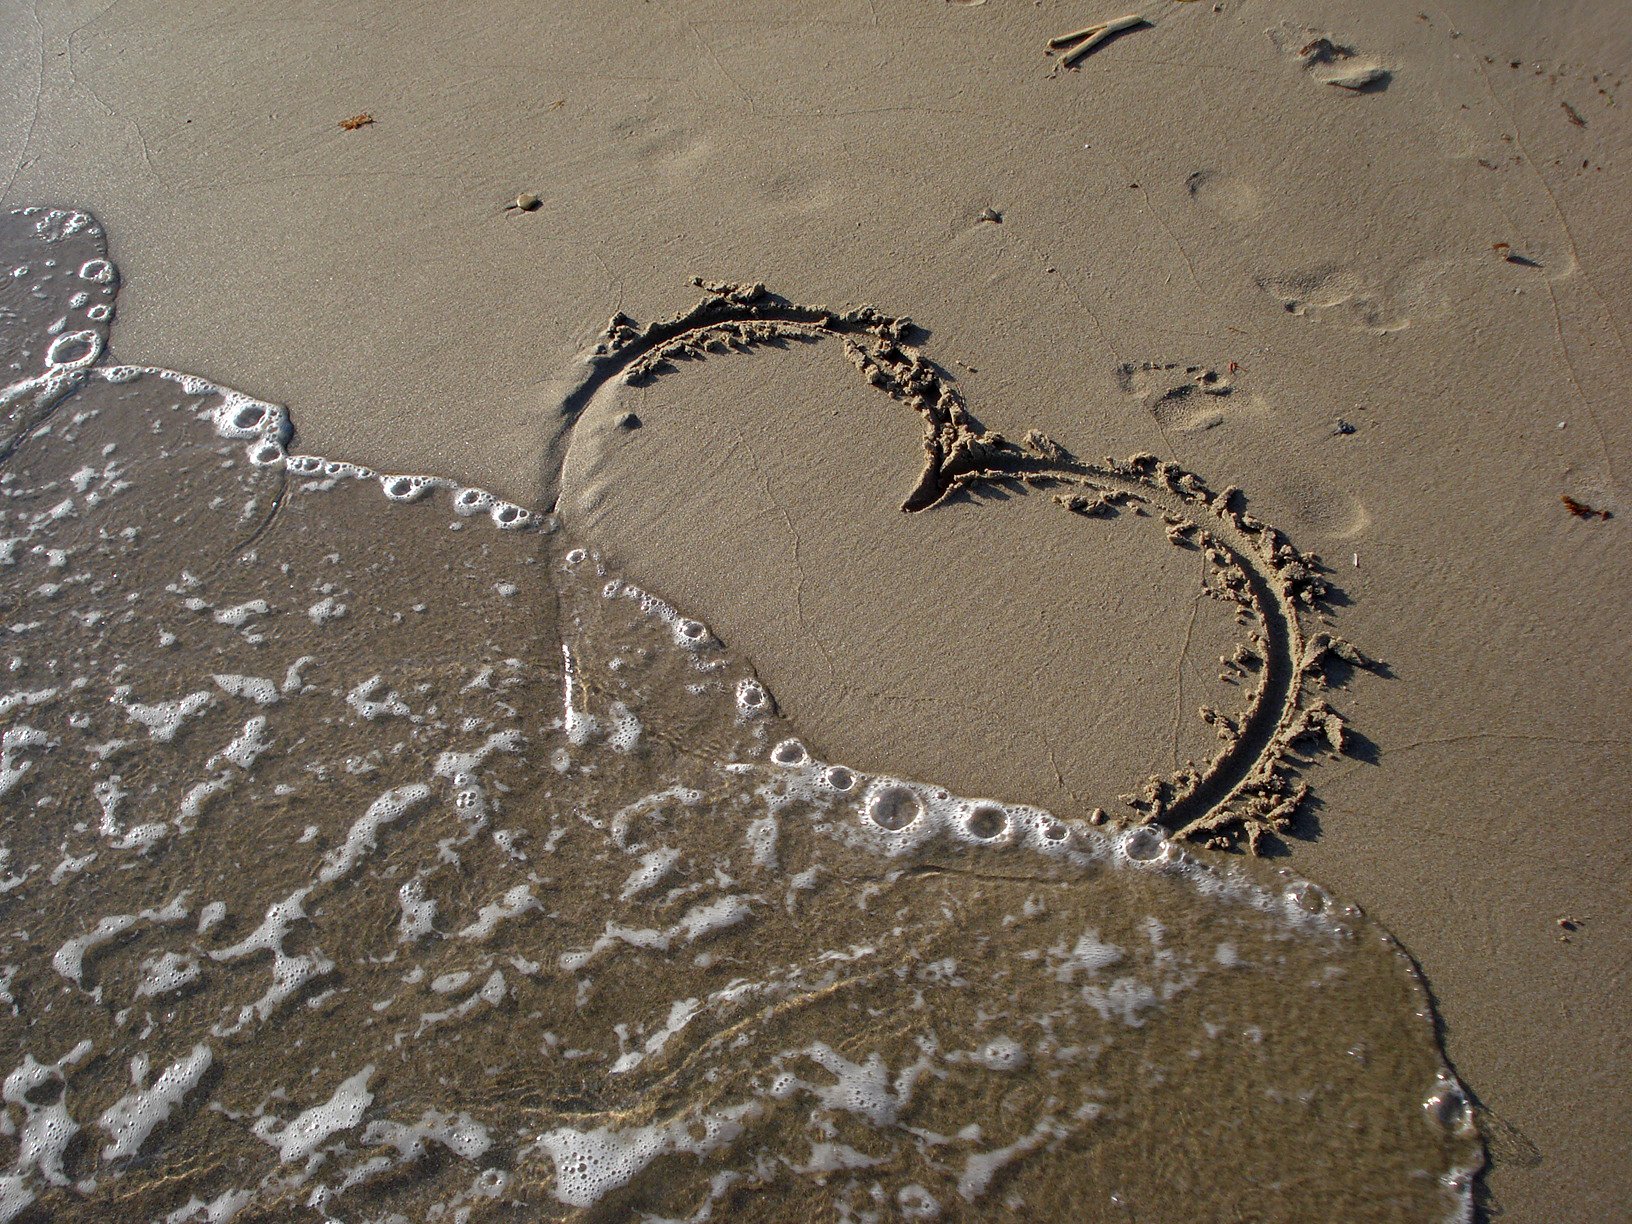 Остаются лишь следы. Сердечко на песке. Следы на песке. Сердечко нарисованное на песке. Следы на песке у моря.